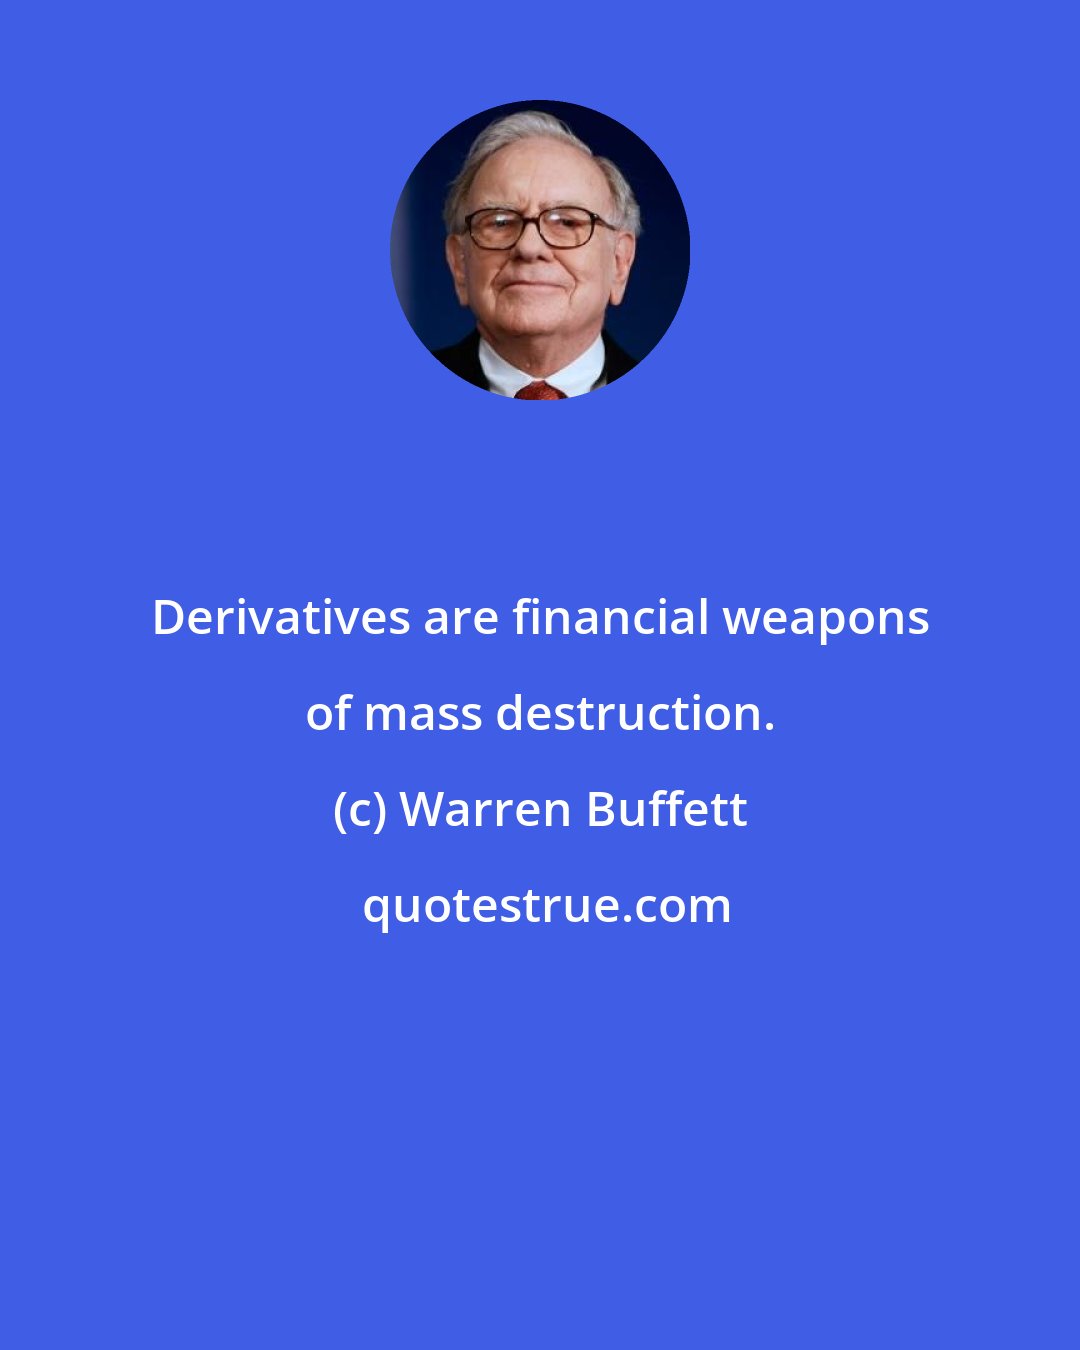 Warren Buffett: Derivatives are financial weapons of mass destruction.